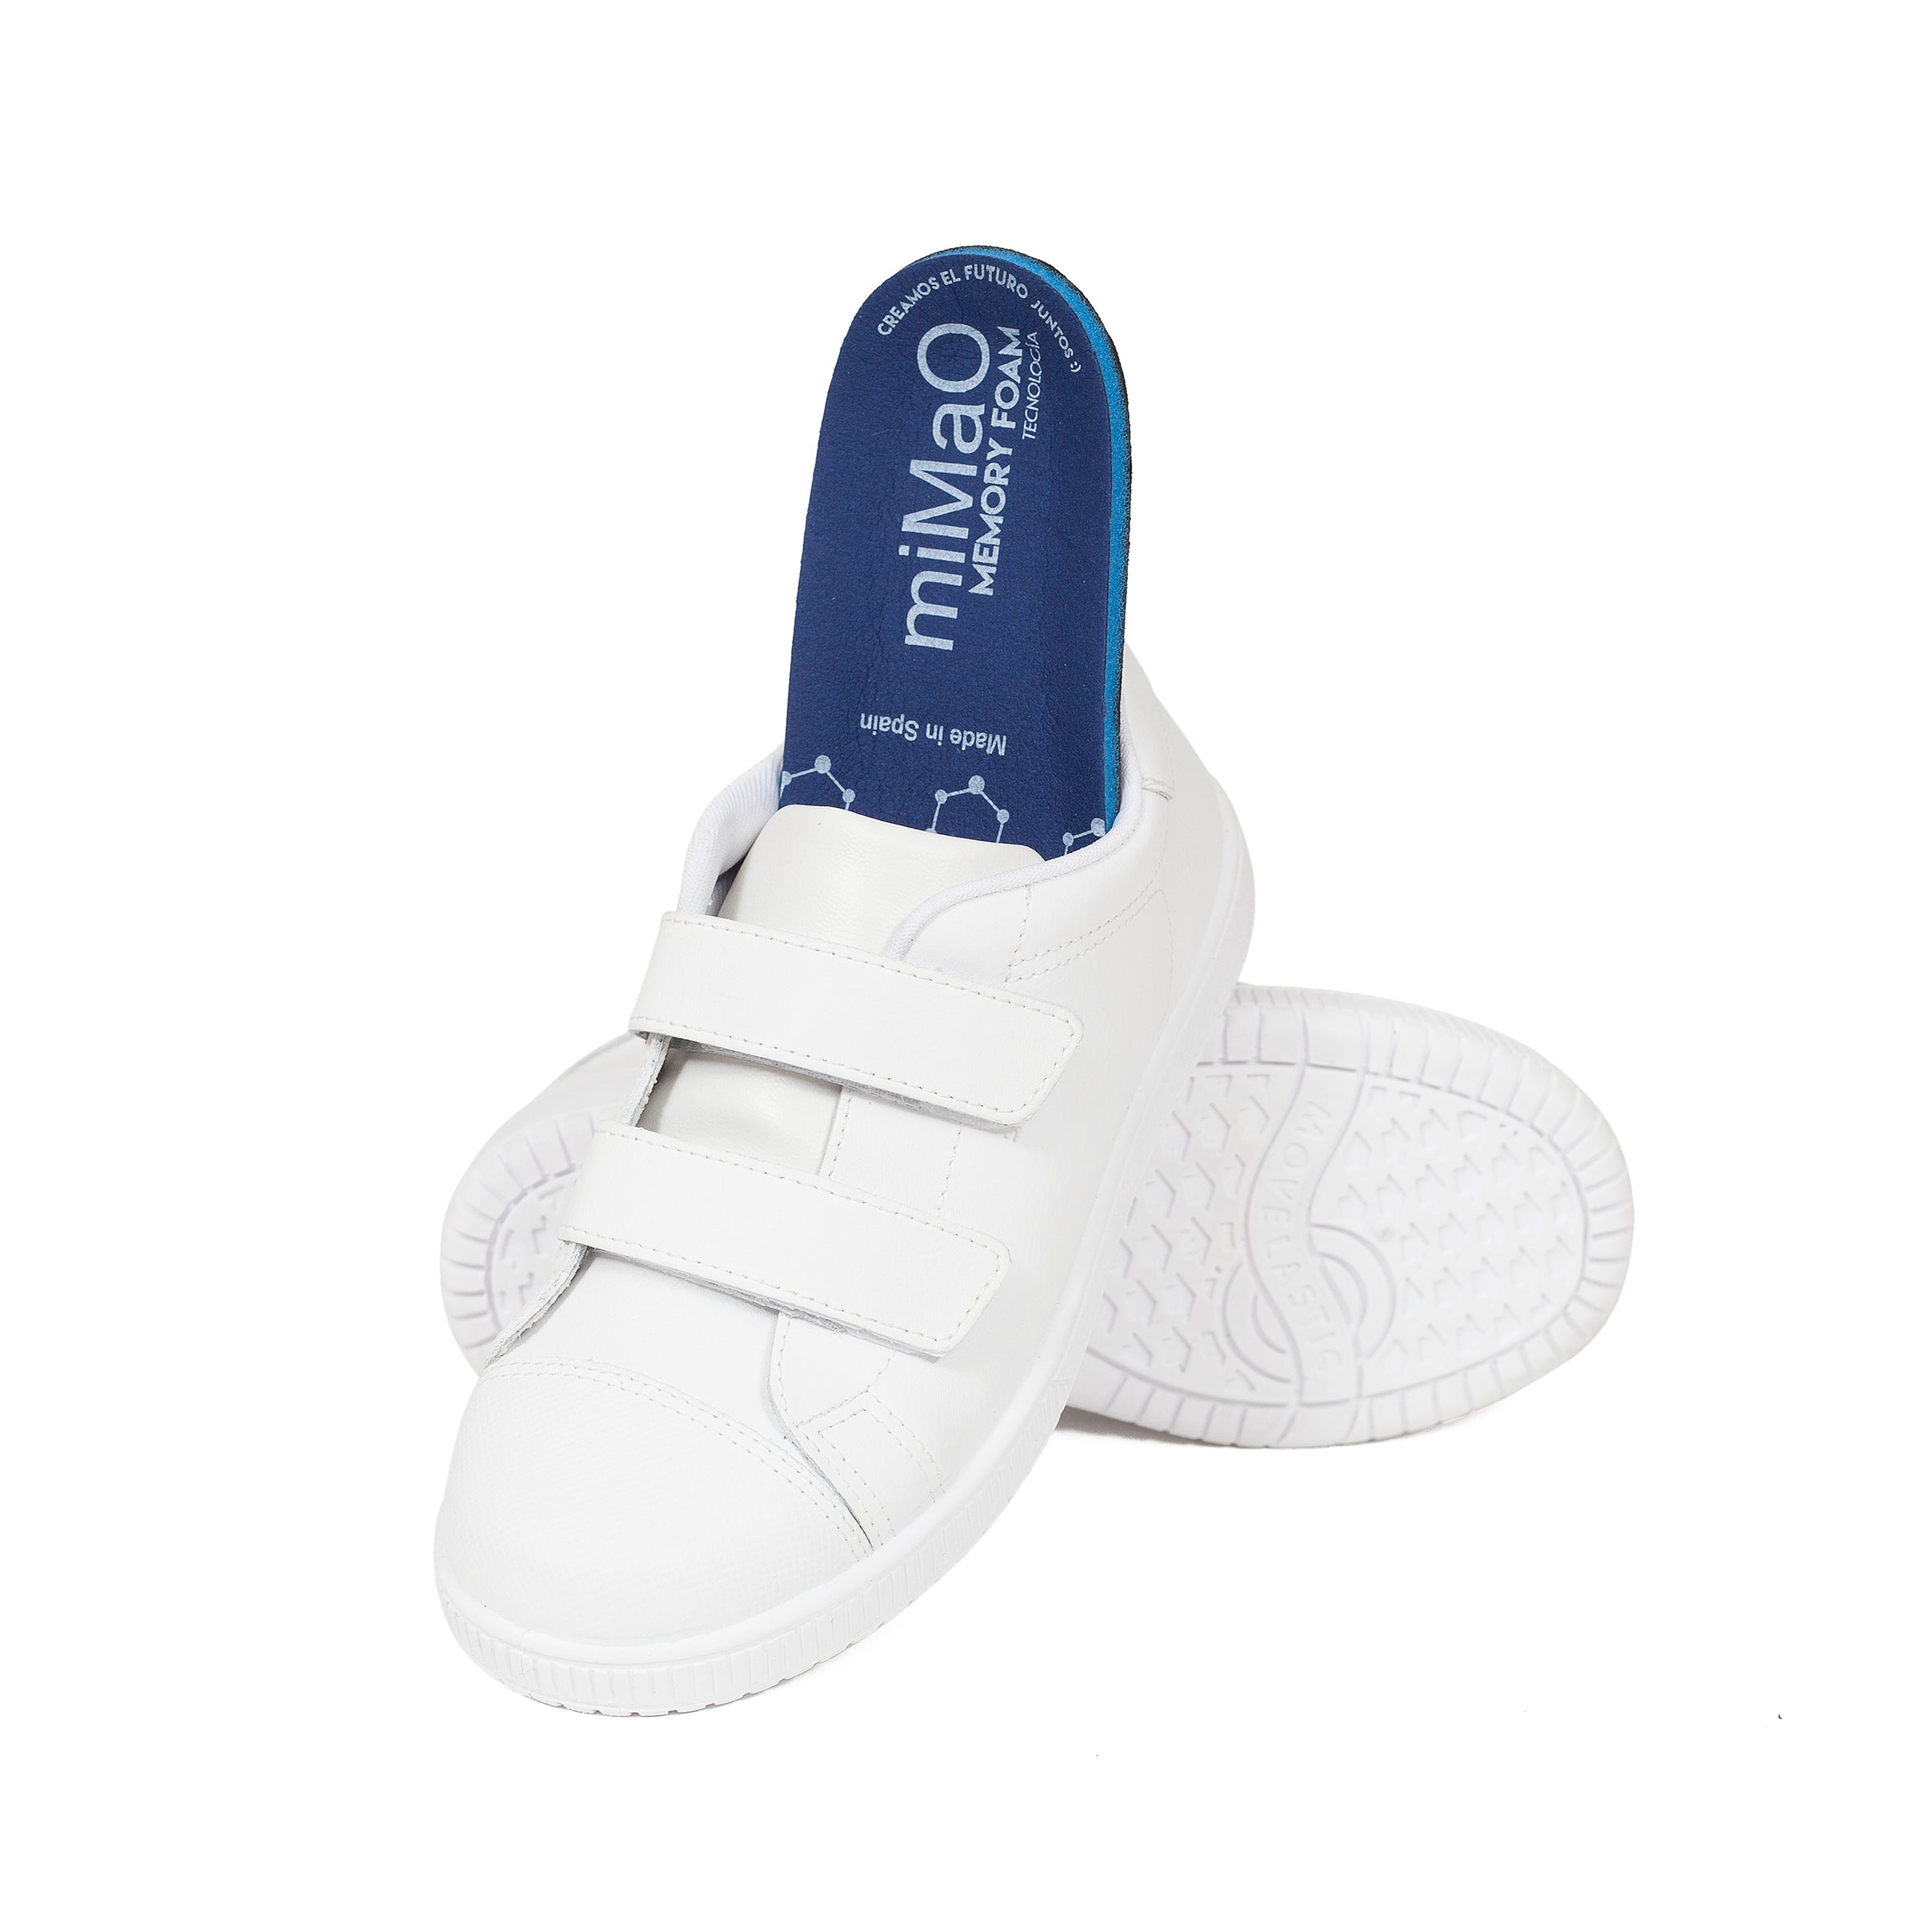 Zapatos colegiales de niña uniforme colegio – Piel Lavable marca miMaO